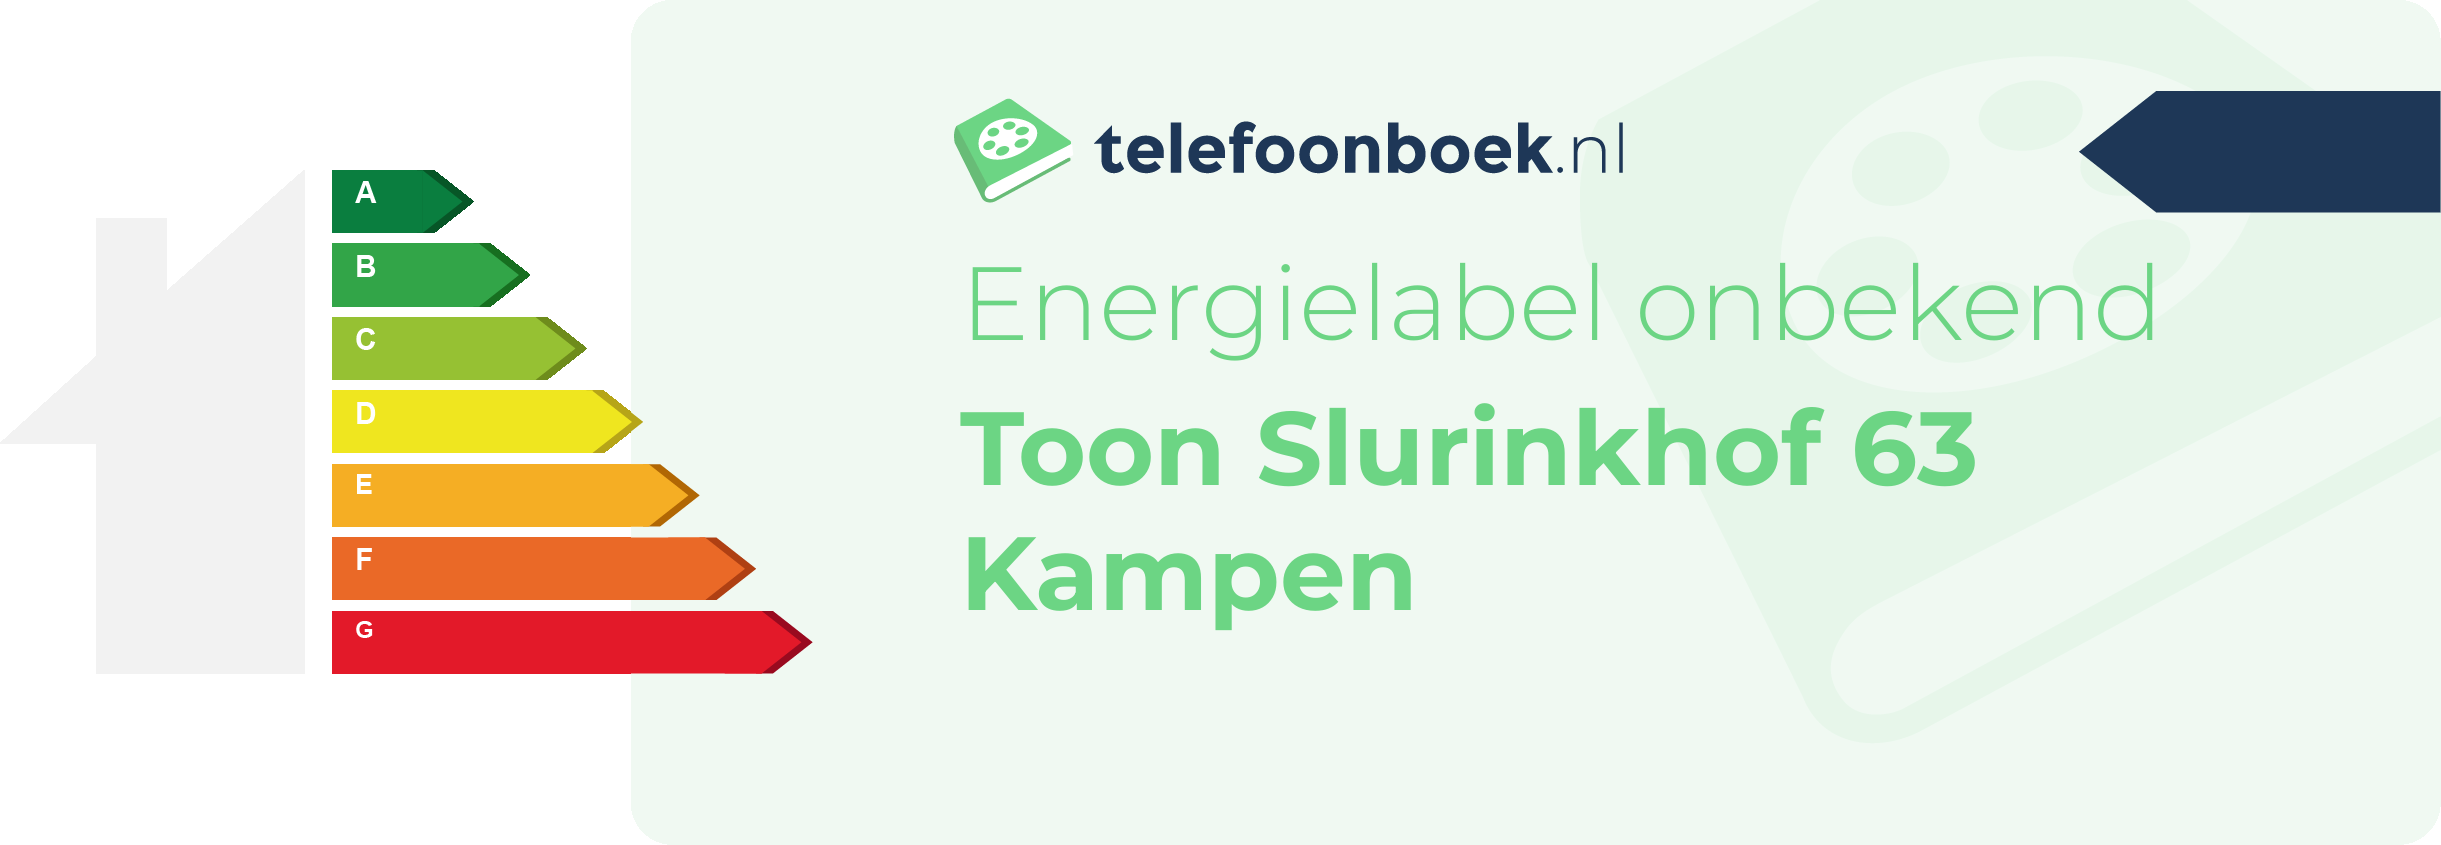 Energielabel Toon Slurinkhof 63 Kampen